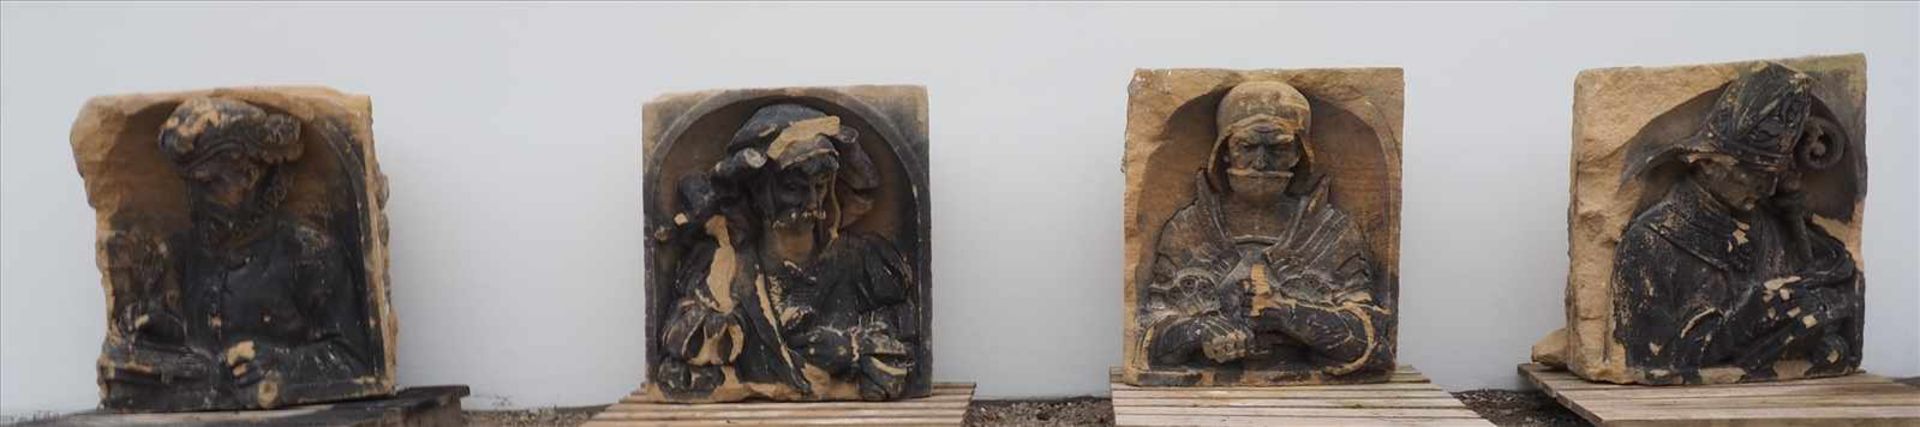 Gotisches Sandsteinrelief "Papst"Altersschäden, Maße: H65 x B70 x T35cm.Insgesamt finden Sie vier